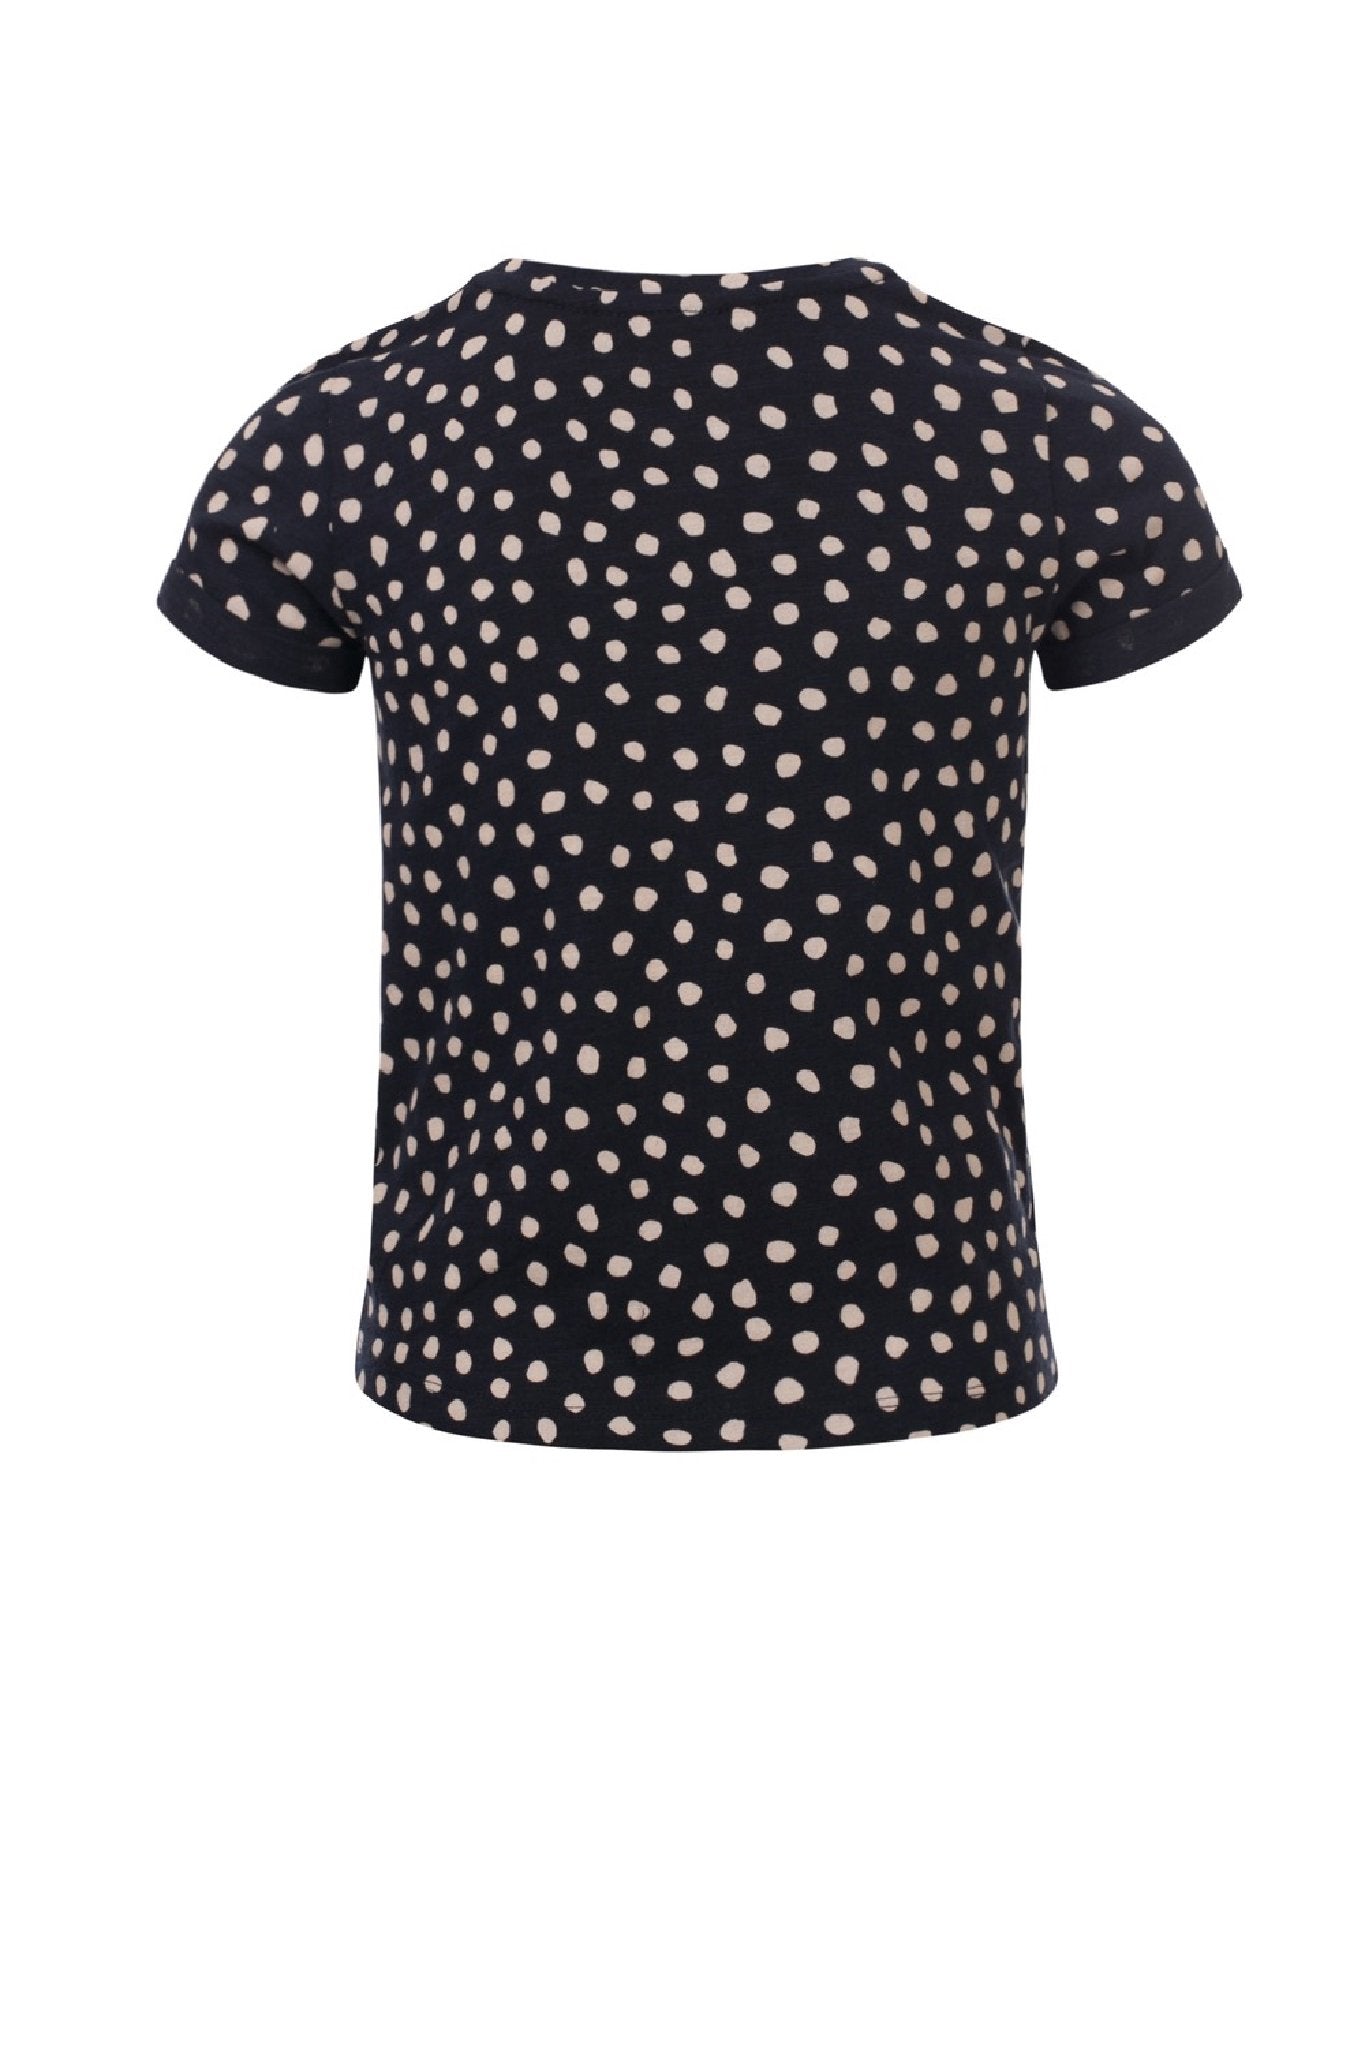 Meisjes Girls T-shirt with knot van Looxs in de kleur Dots Ao in maat 164.